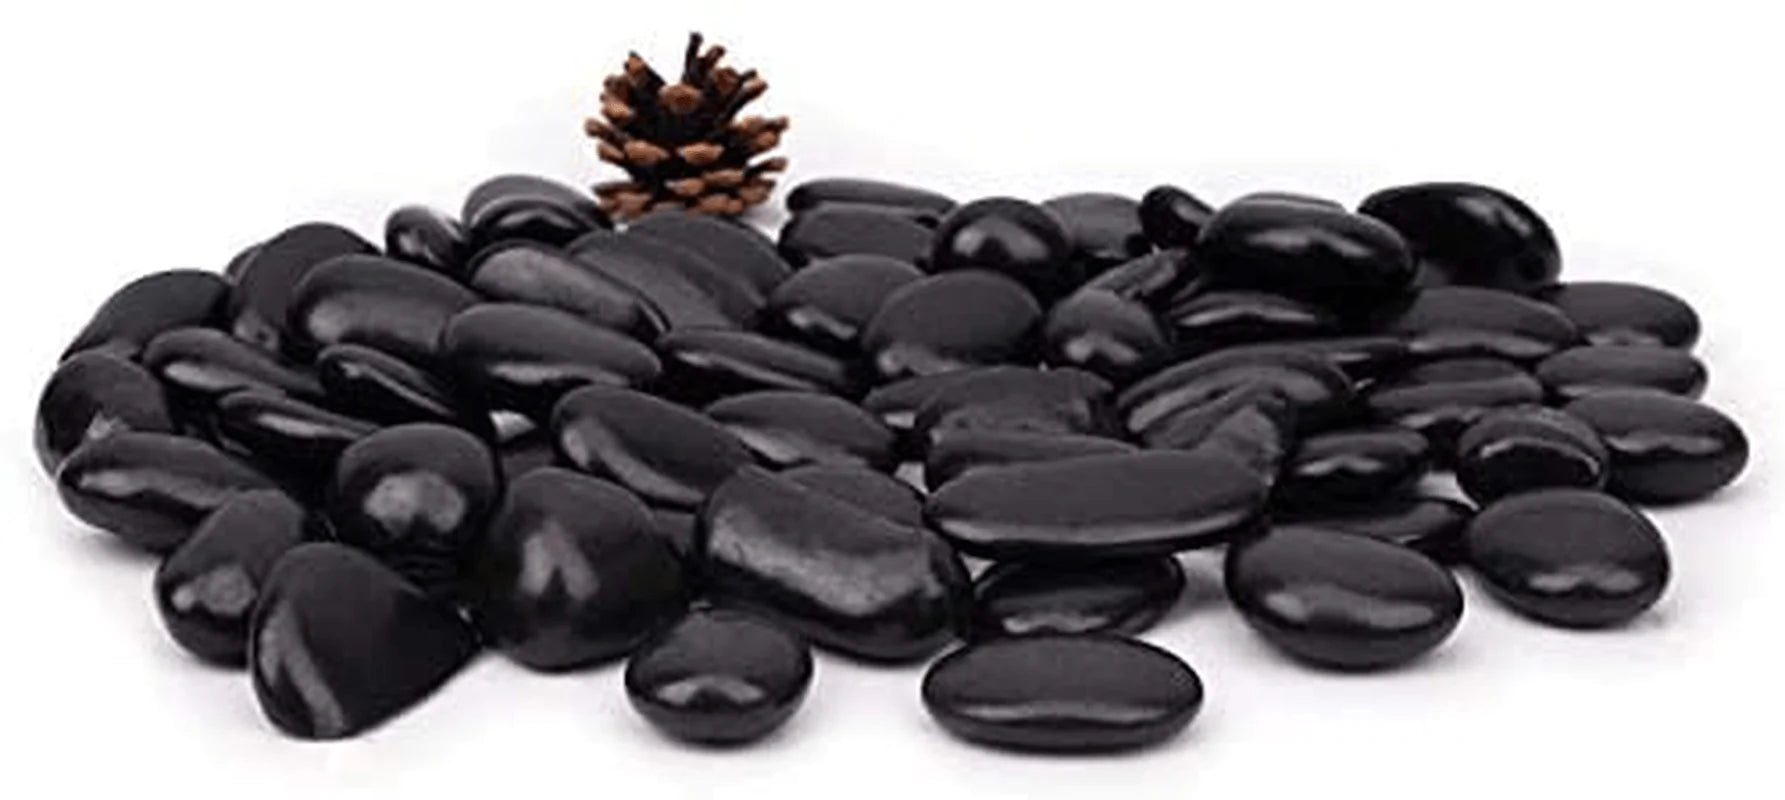 [18 Pounds] Black Pebbles Aquarium Gravel River Rock, Natural Polished Decorative Gravel,Garden Outdoor Ornamental River Pebbles Rocks,Black Stones，Polished Gravel for Landscaping Vase Fillers (Black)